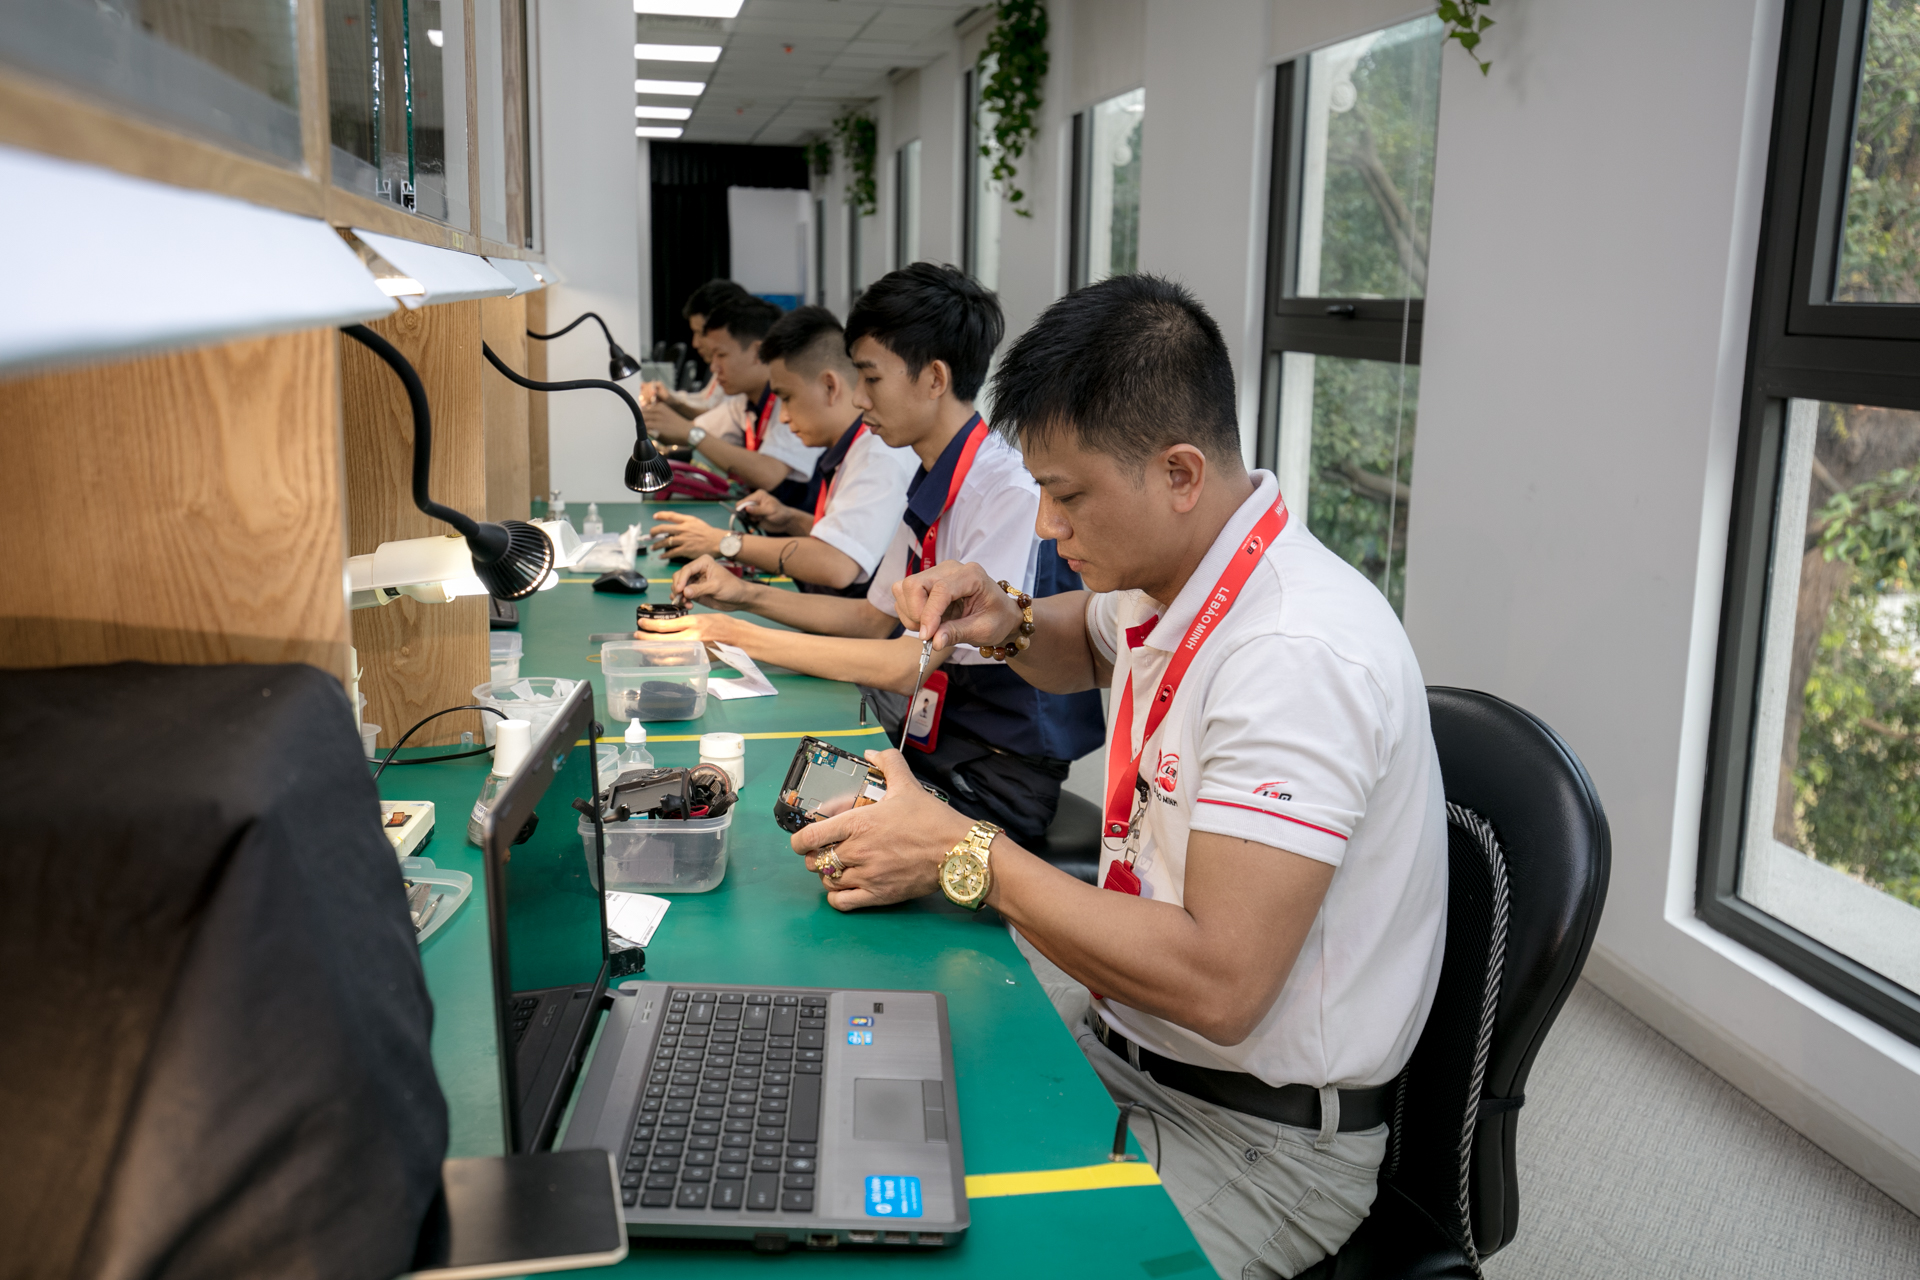 Canon cam kết chất lượng dịch vụ tại Việt Nam với Trung tâm Sửa chữa và Bảo hành chính hãng 2 triệu USD